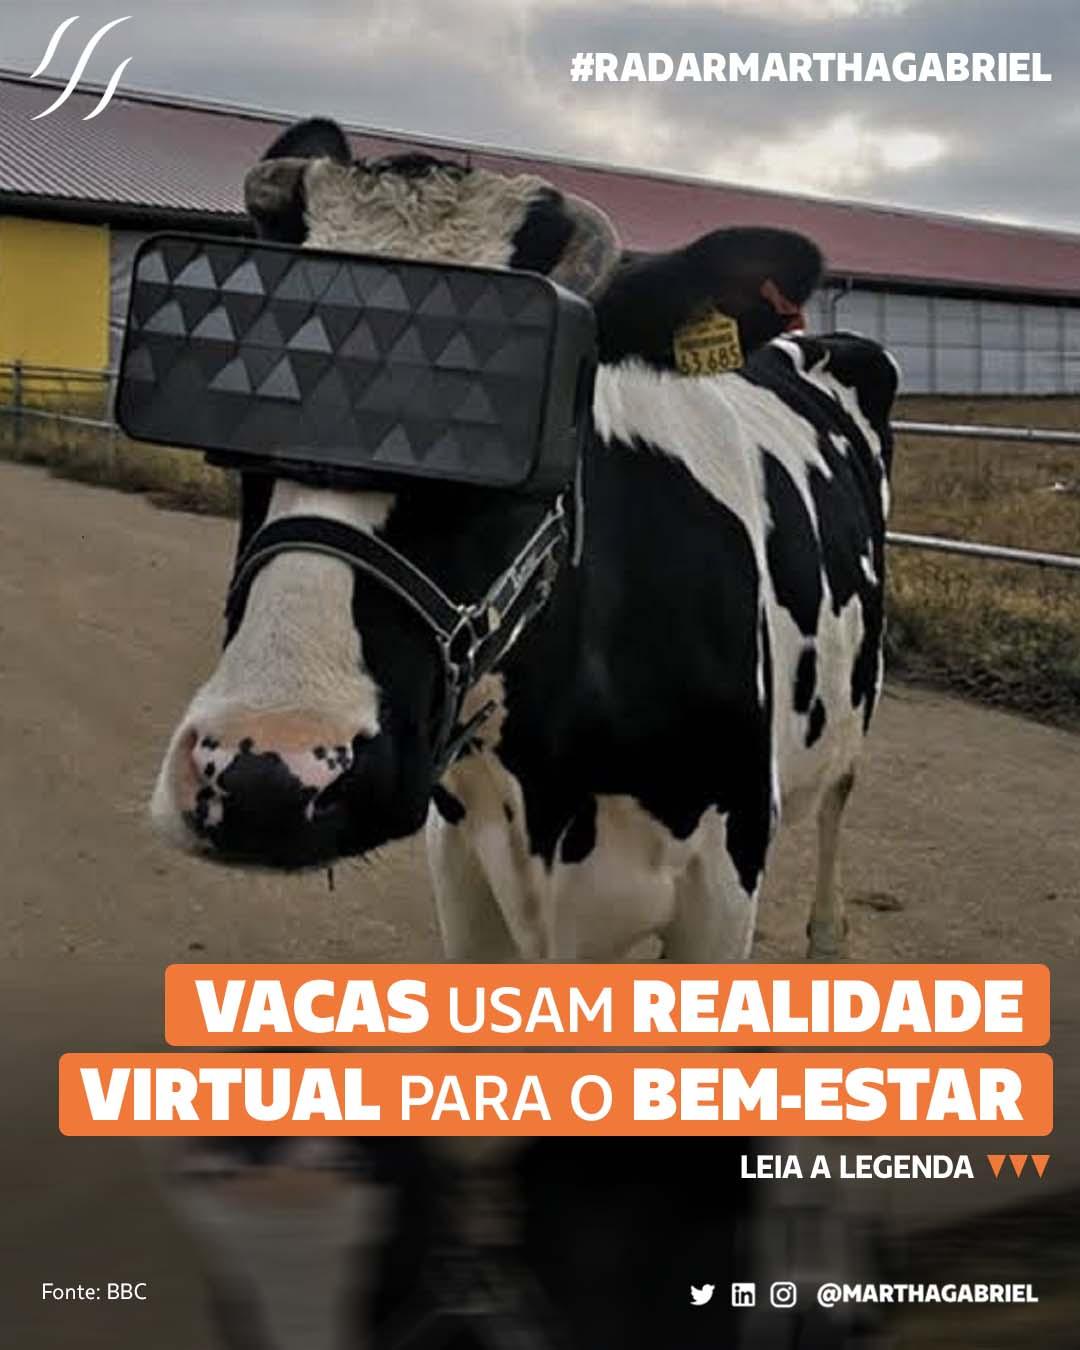 Vacas usam realidade virtual para o bem-estar